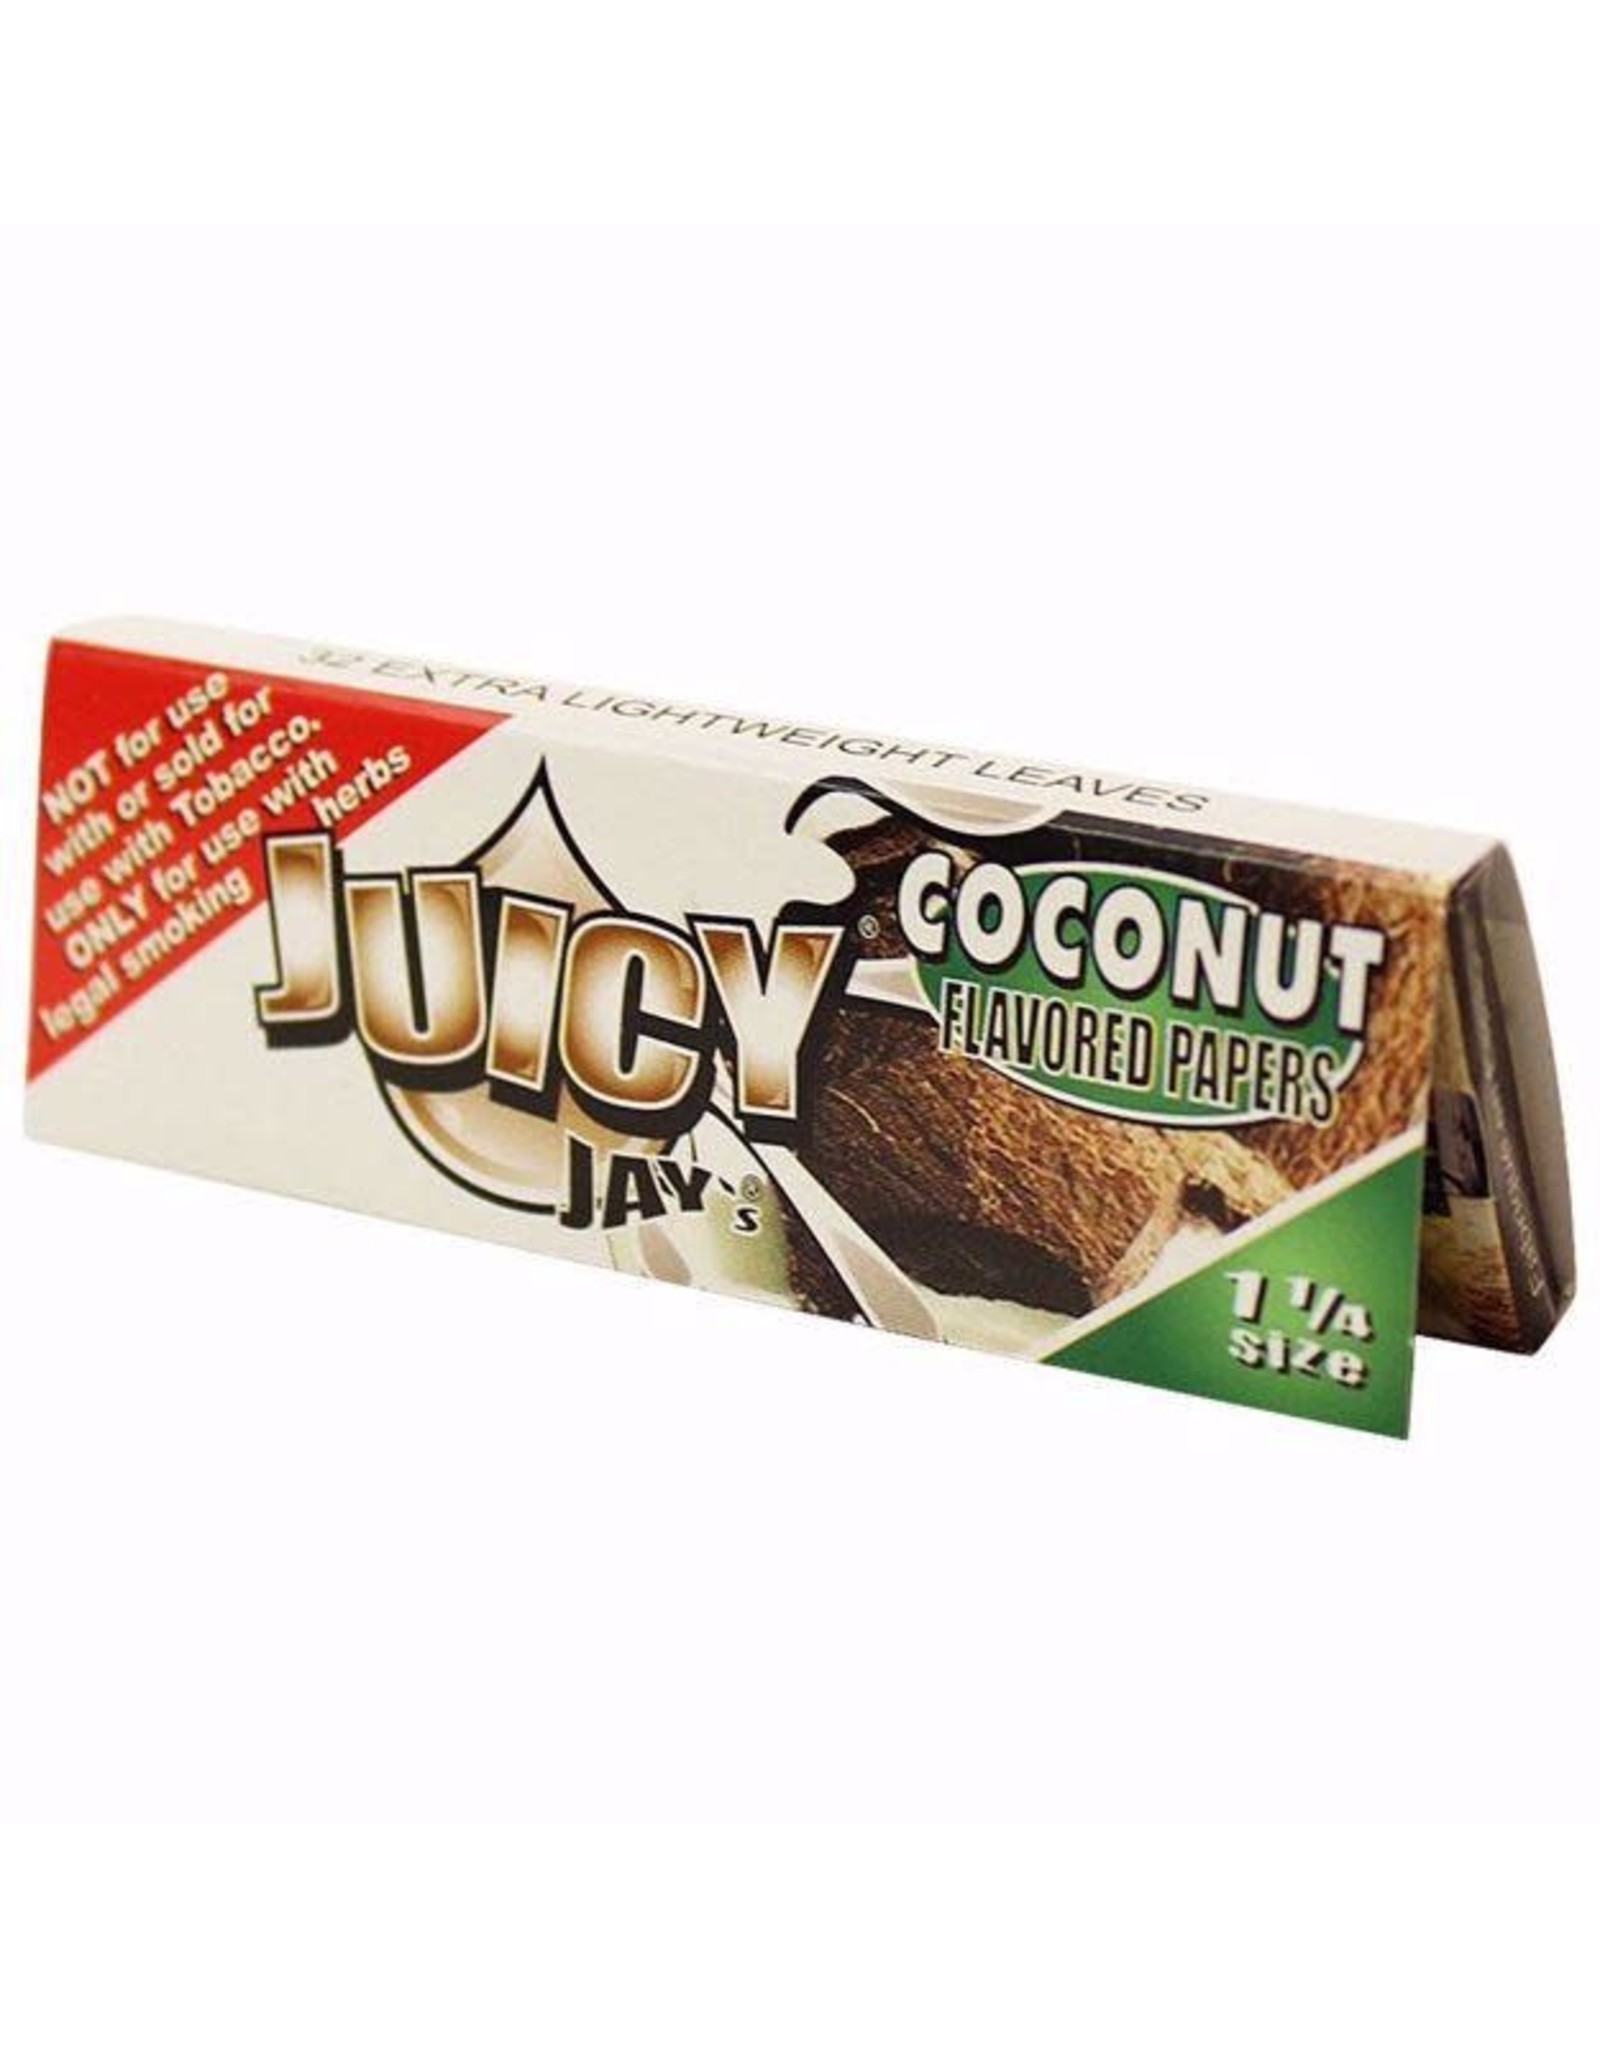 juicy jay Juicy Jay's 1-1/4 Coconut